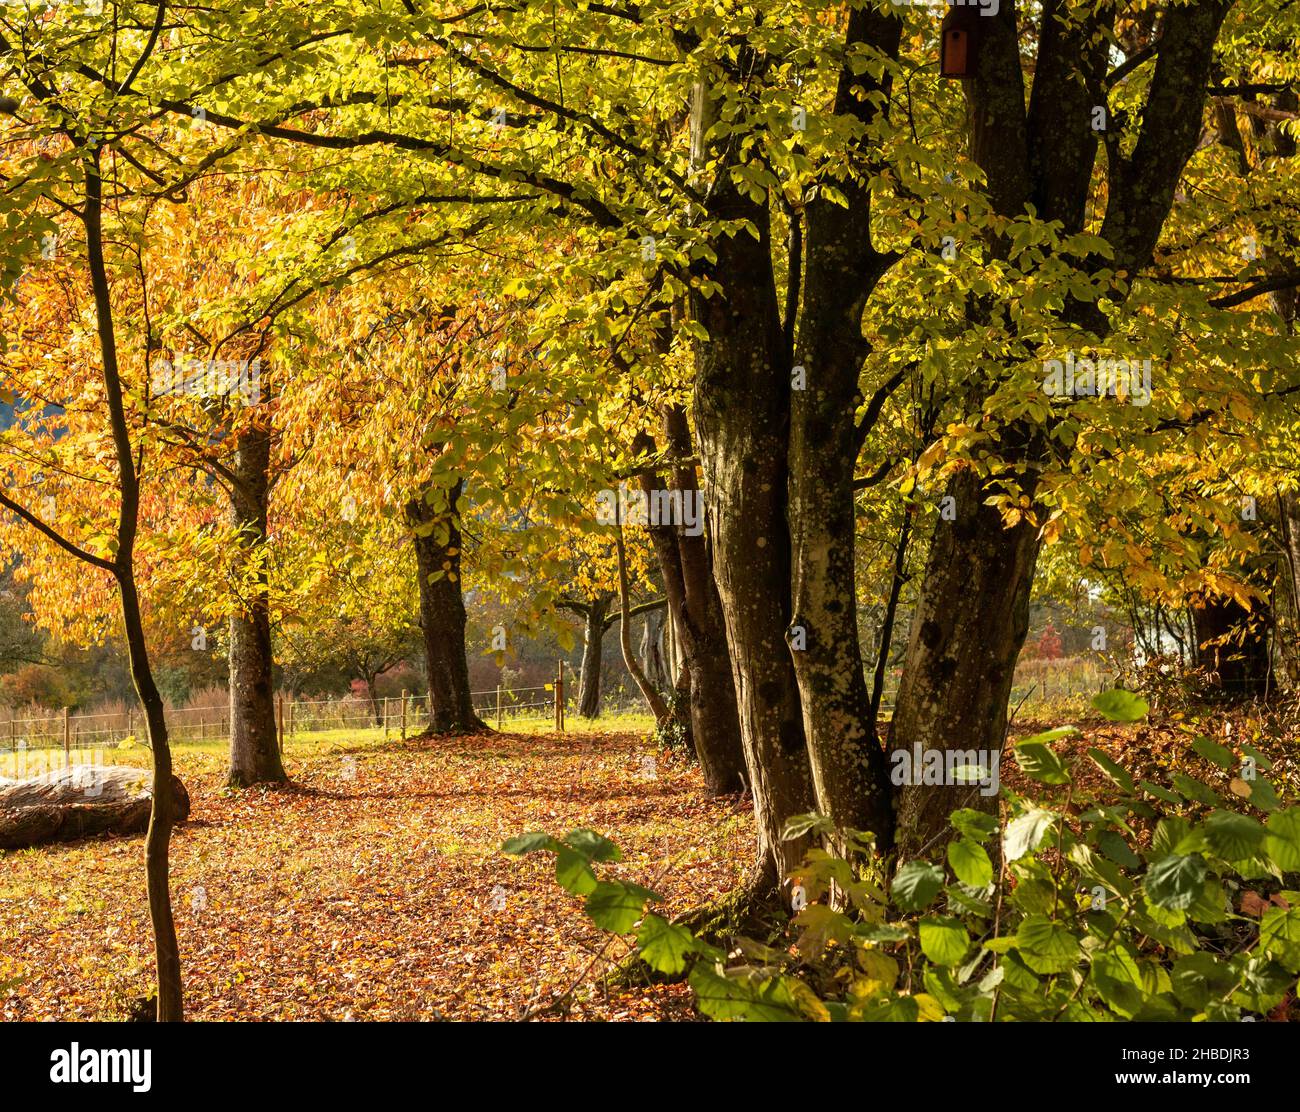 Herbststimmung am Waldrand. Blick auf eine Wiesenplantage in Süddeutschland. Konzentrieren Sie sich auf die Bäume im Vordergrund des Bildes. Stockfoto